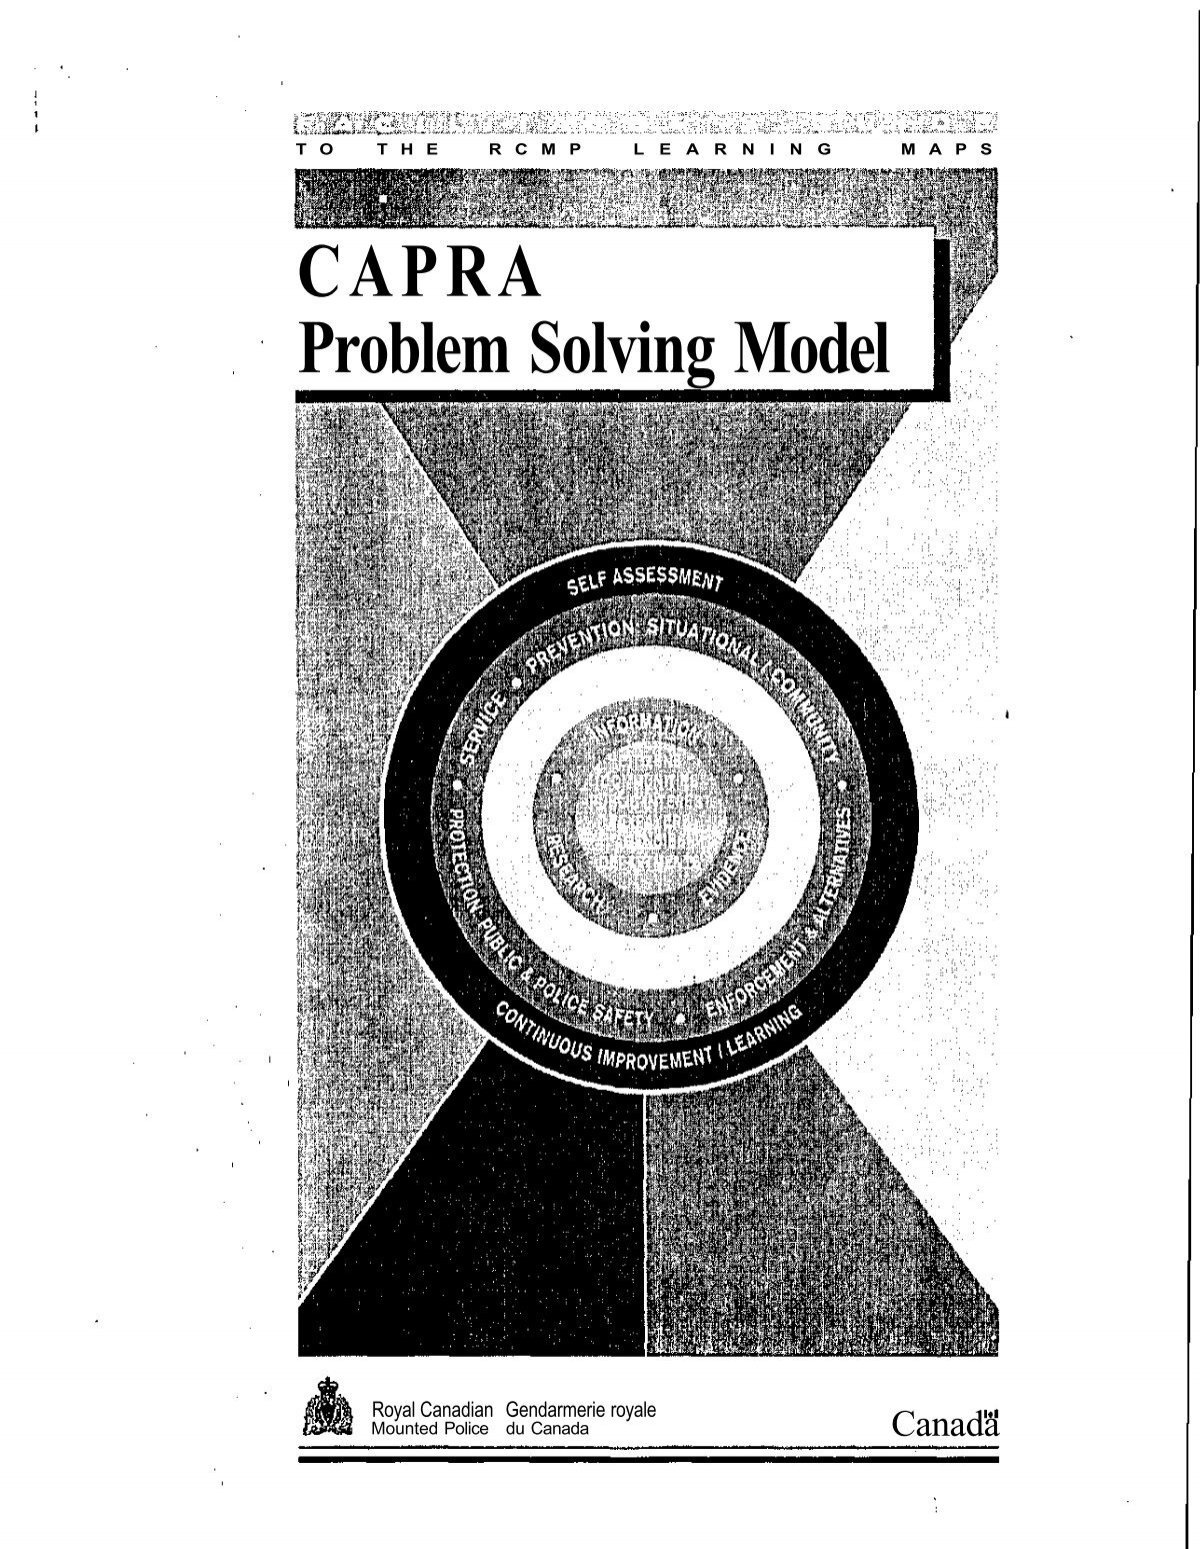 capra model of problem solving